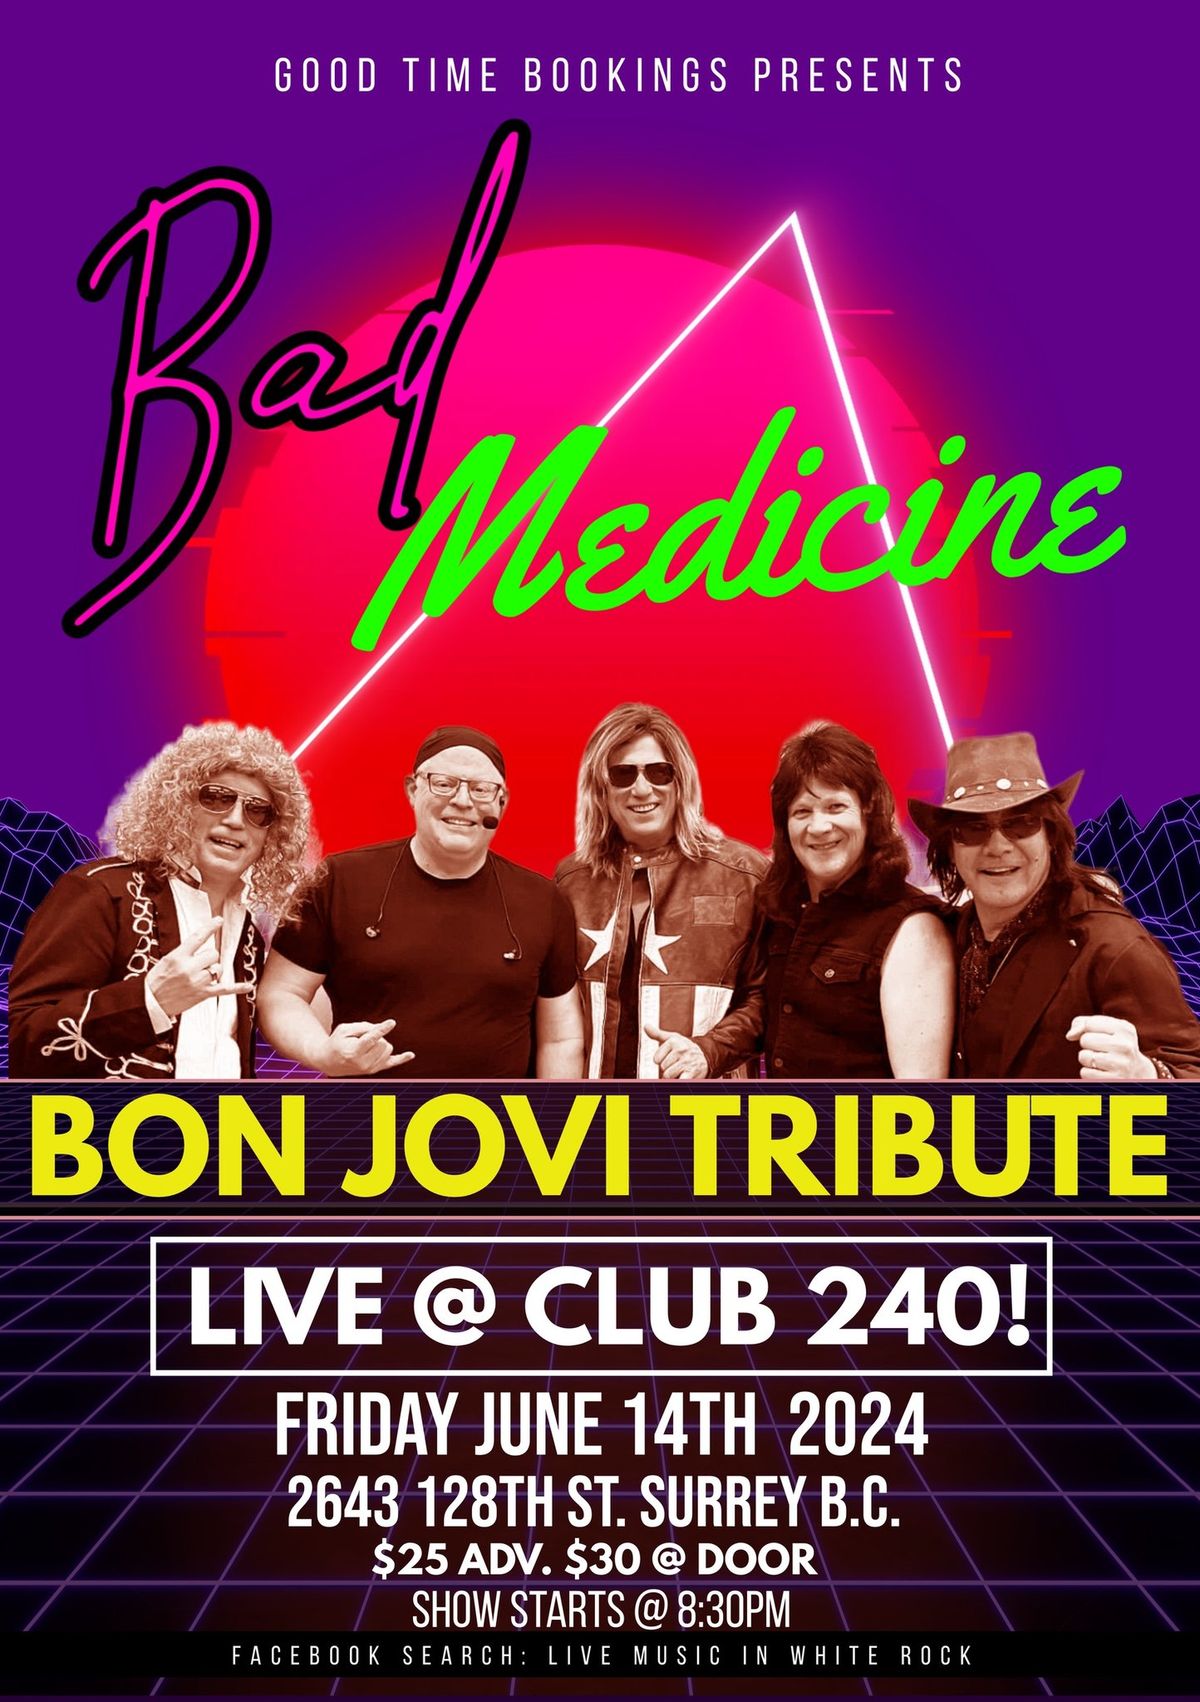 BON JOVI TRIBUTE LIVE! @ CLUB 240!